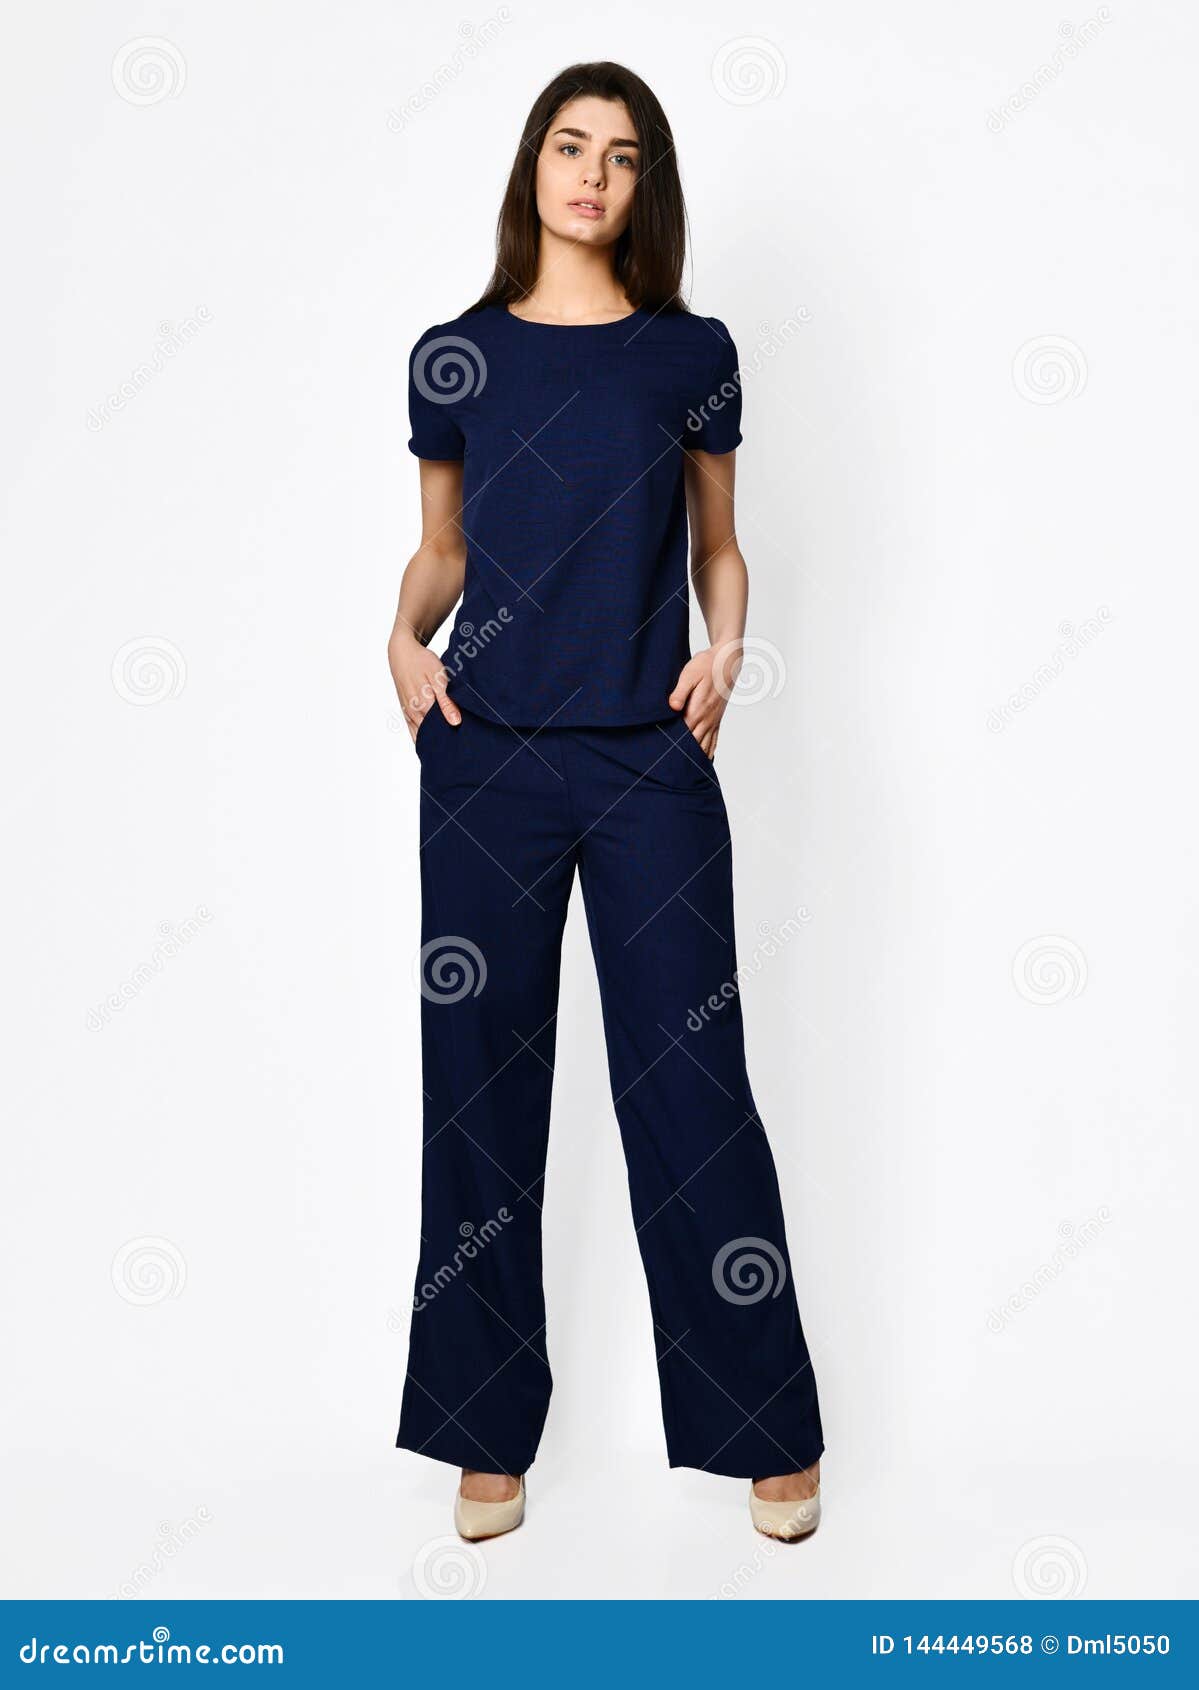 presupuesto roto Corchete Mujer Hermosa Joven Que Presenta En Nueva Blusa Azul Marino Con El Traje  Casual De La Moda De Los Pantalones Foto de archivo - Imagen de humano,  fashionable: 144449568